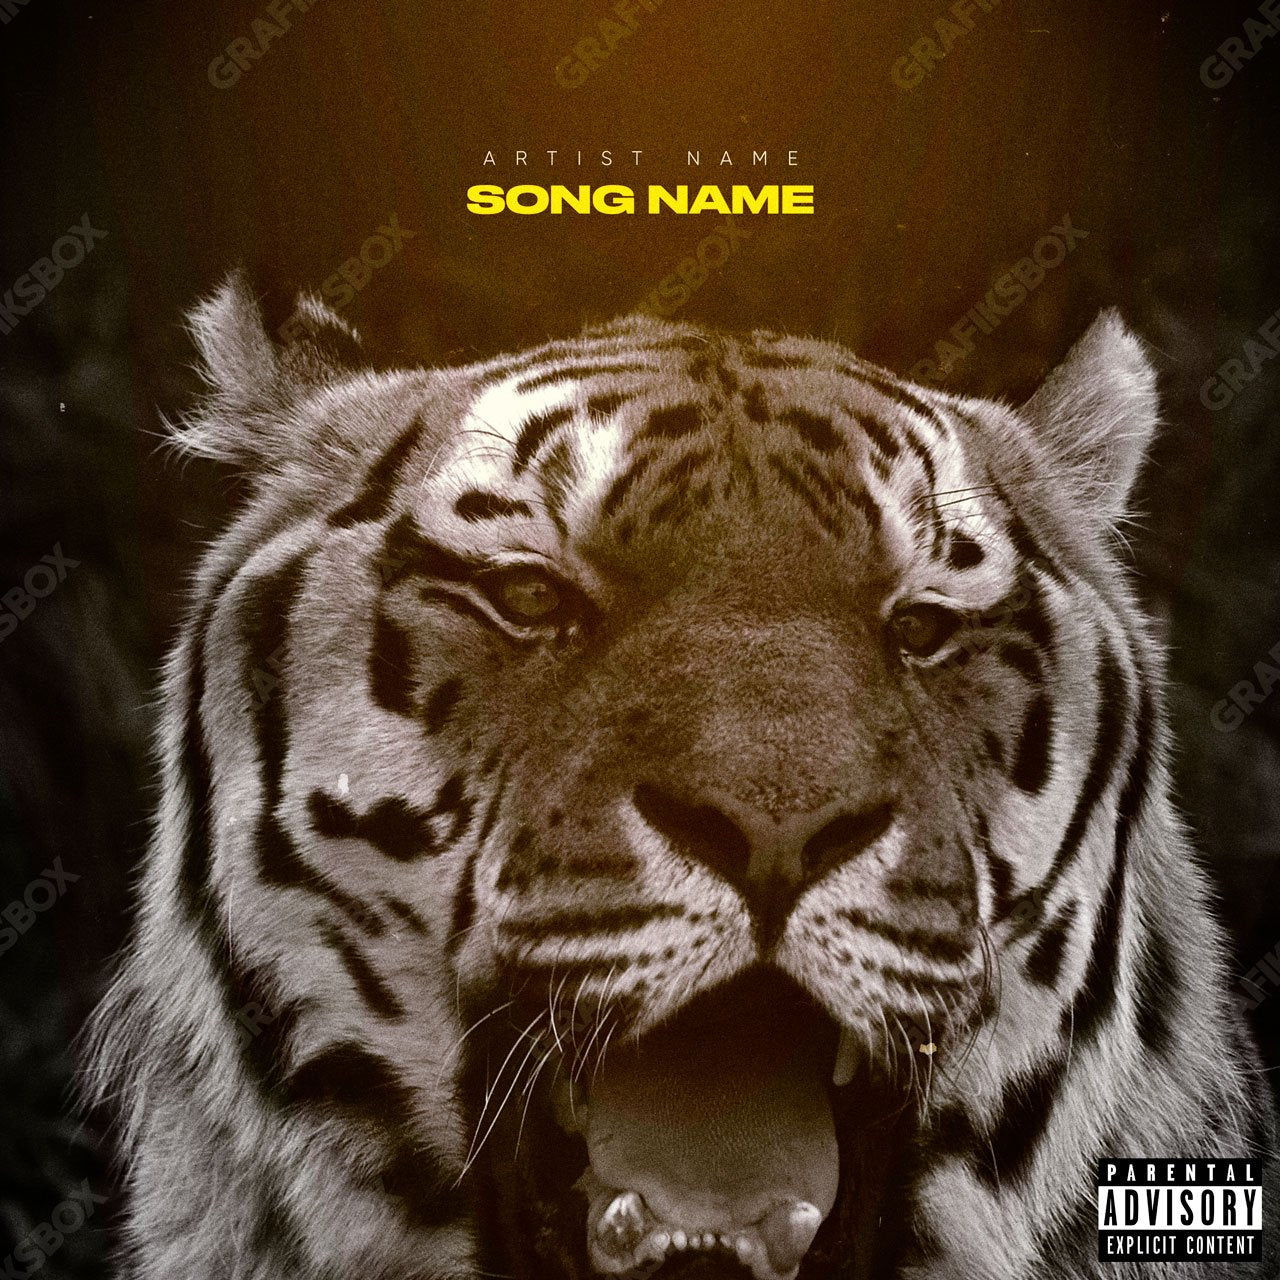 Tiger premade cover art